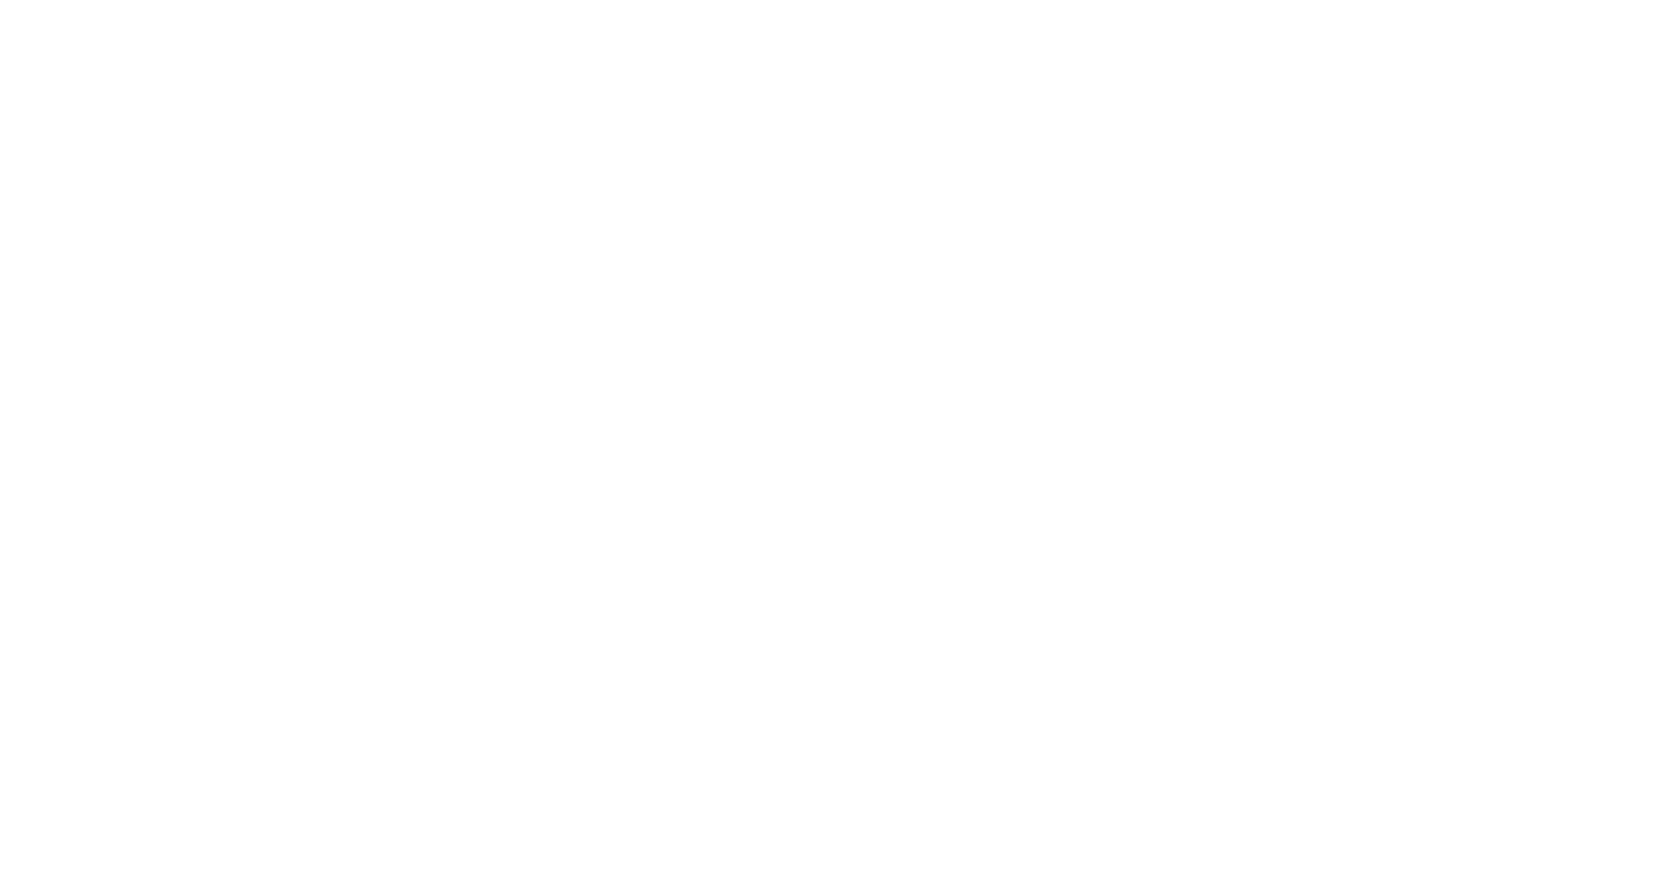 Кейс сервиса BRANDNATION - Дизайн упаковки полуфабрикатов: манты, долма, блины. Брендинговое агентство BRANDNATION в Москве и Санкт-Петербурге. Услуги: разработка логотипа и фирменного стиля, дизайн упаковки, брендбук, ребрендинг, разработка сайта.